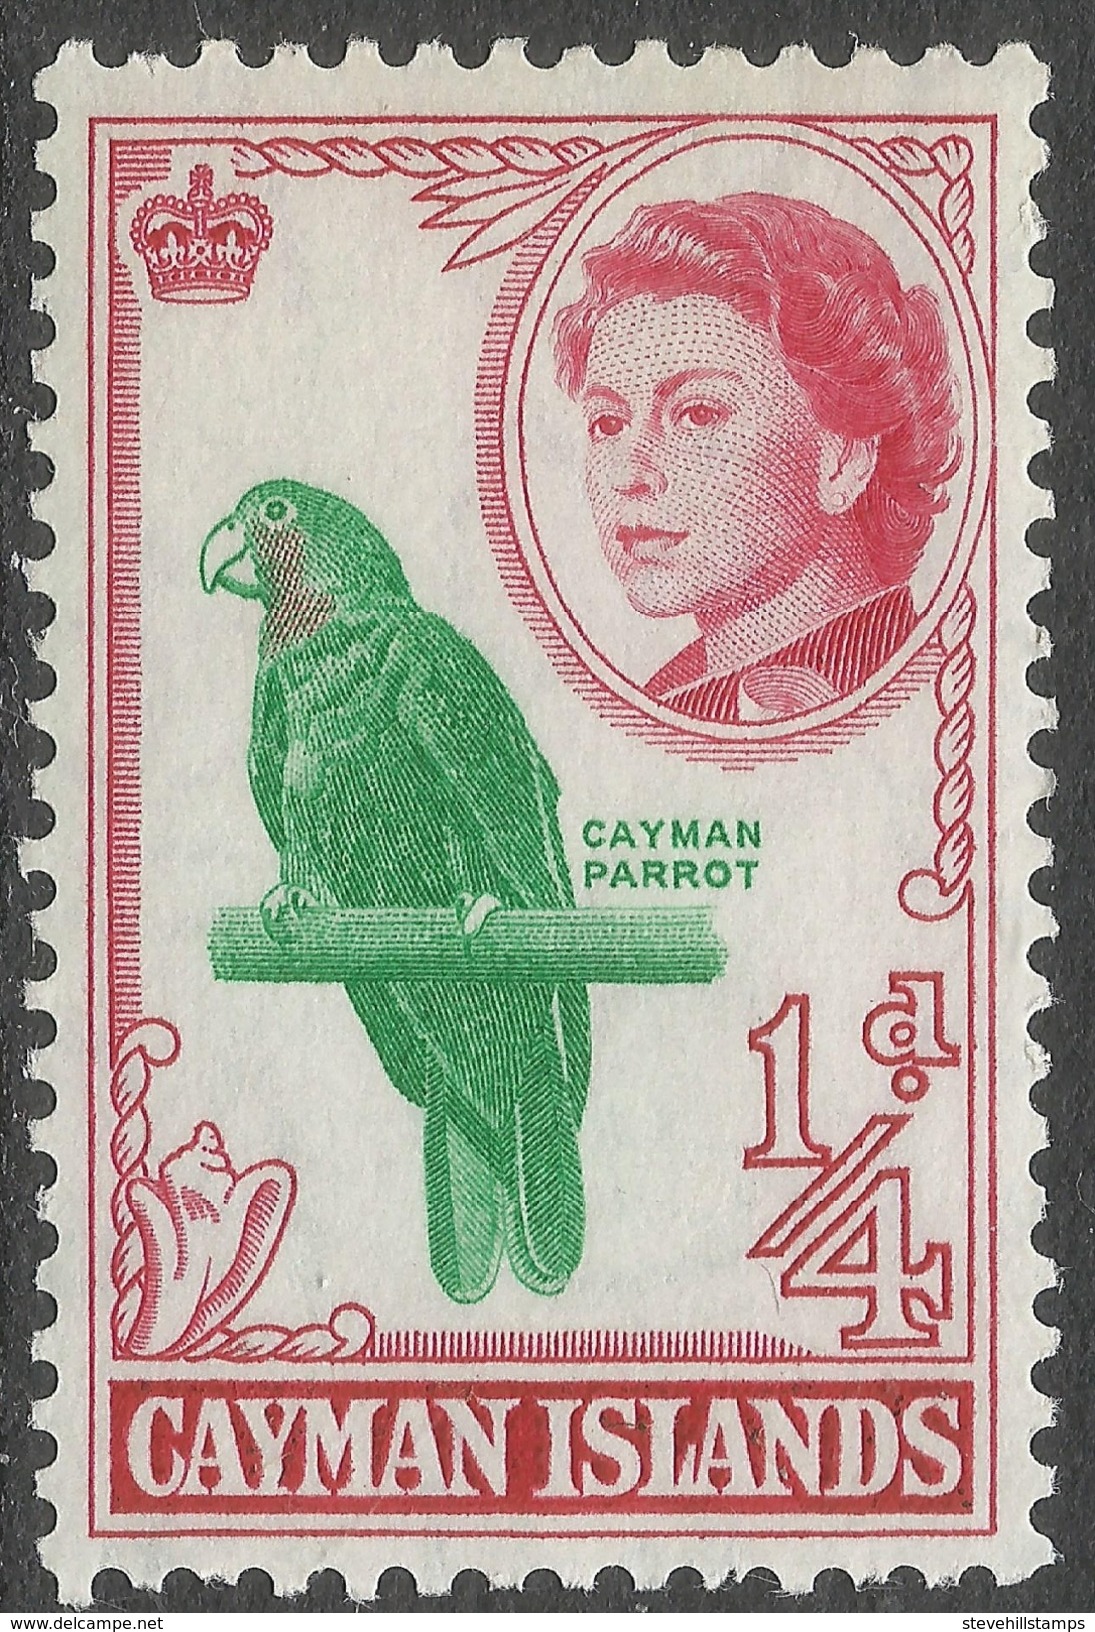 Cayman Islands. 1962-64 QEII. ¼d MH. SG 165 - Cayman Islands